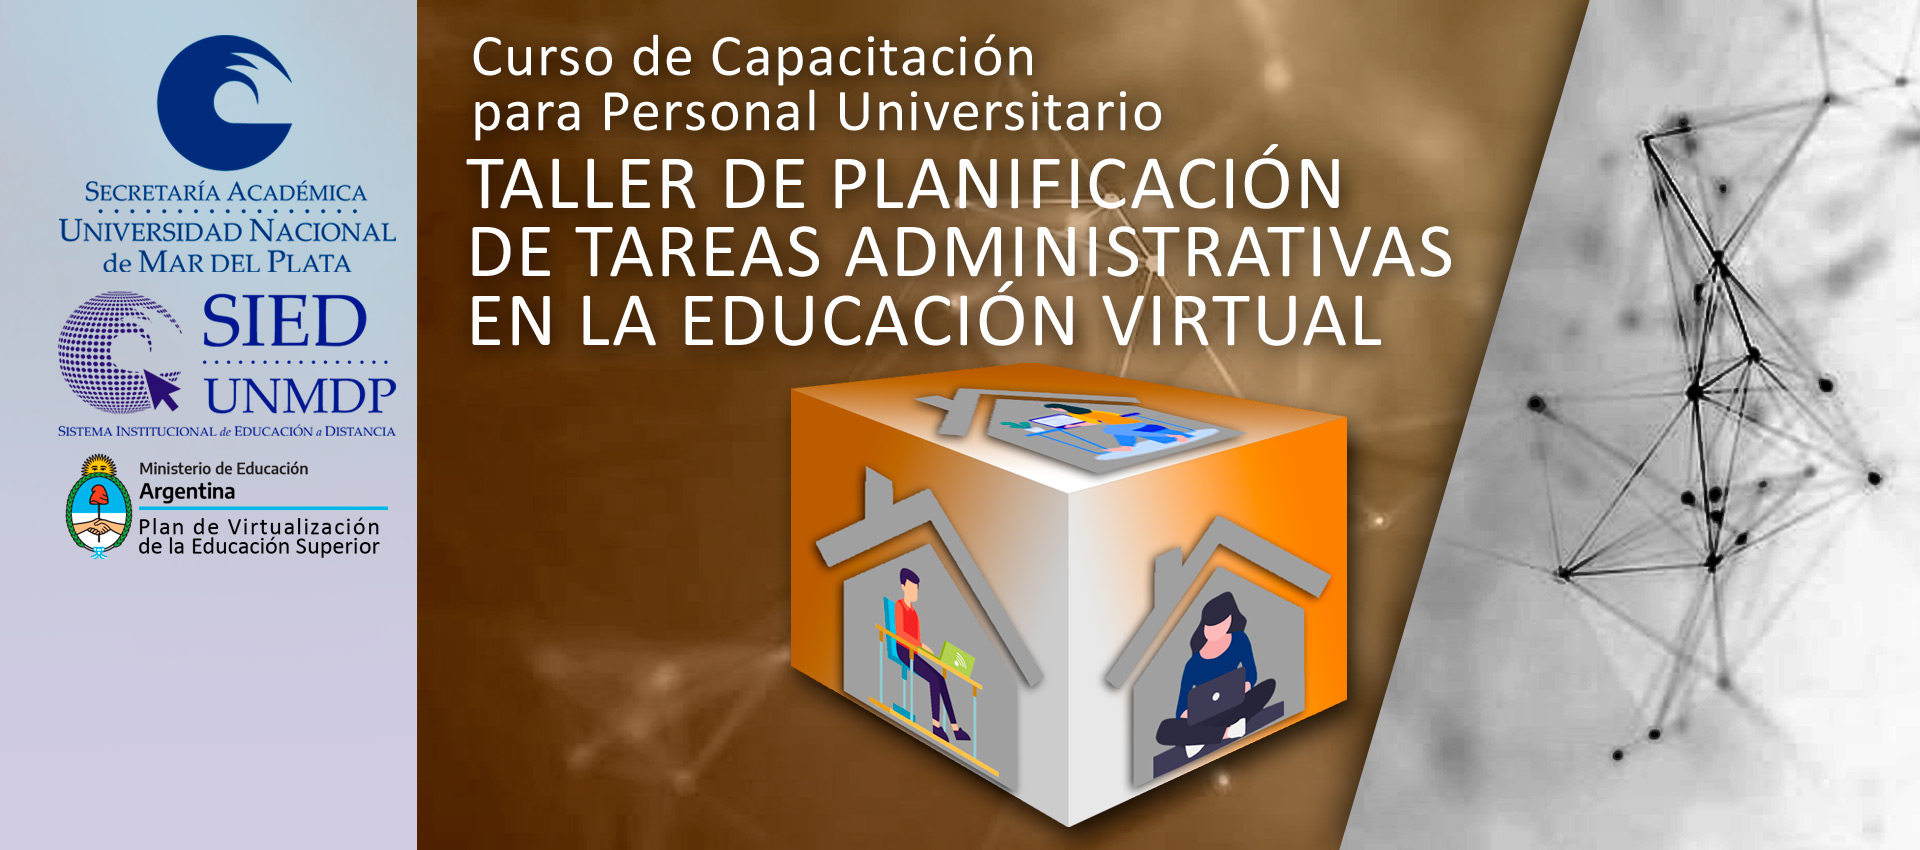 Imagen de portada del Taller de planificación de tareas administrativas en la educación virtual para personal universitario